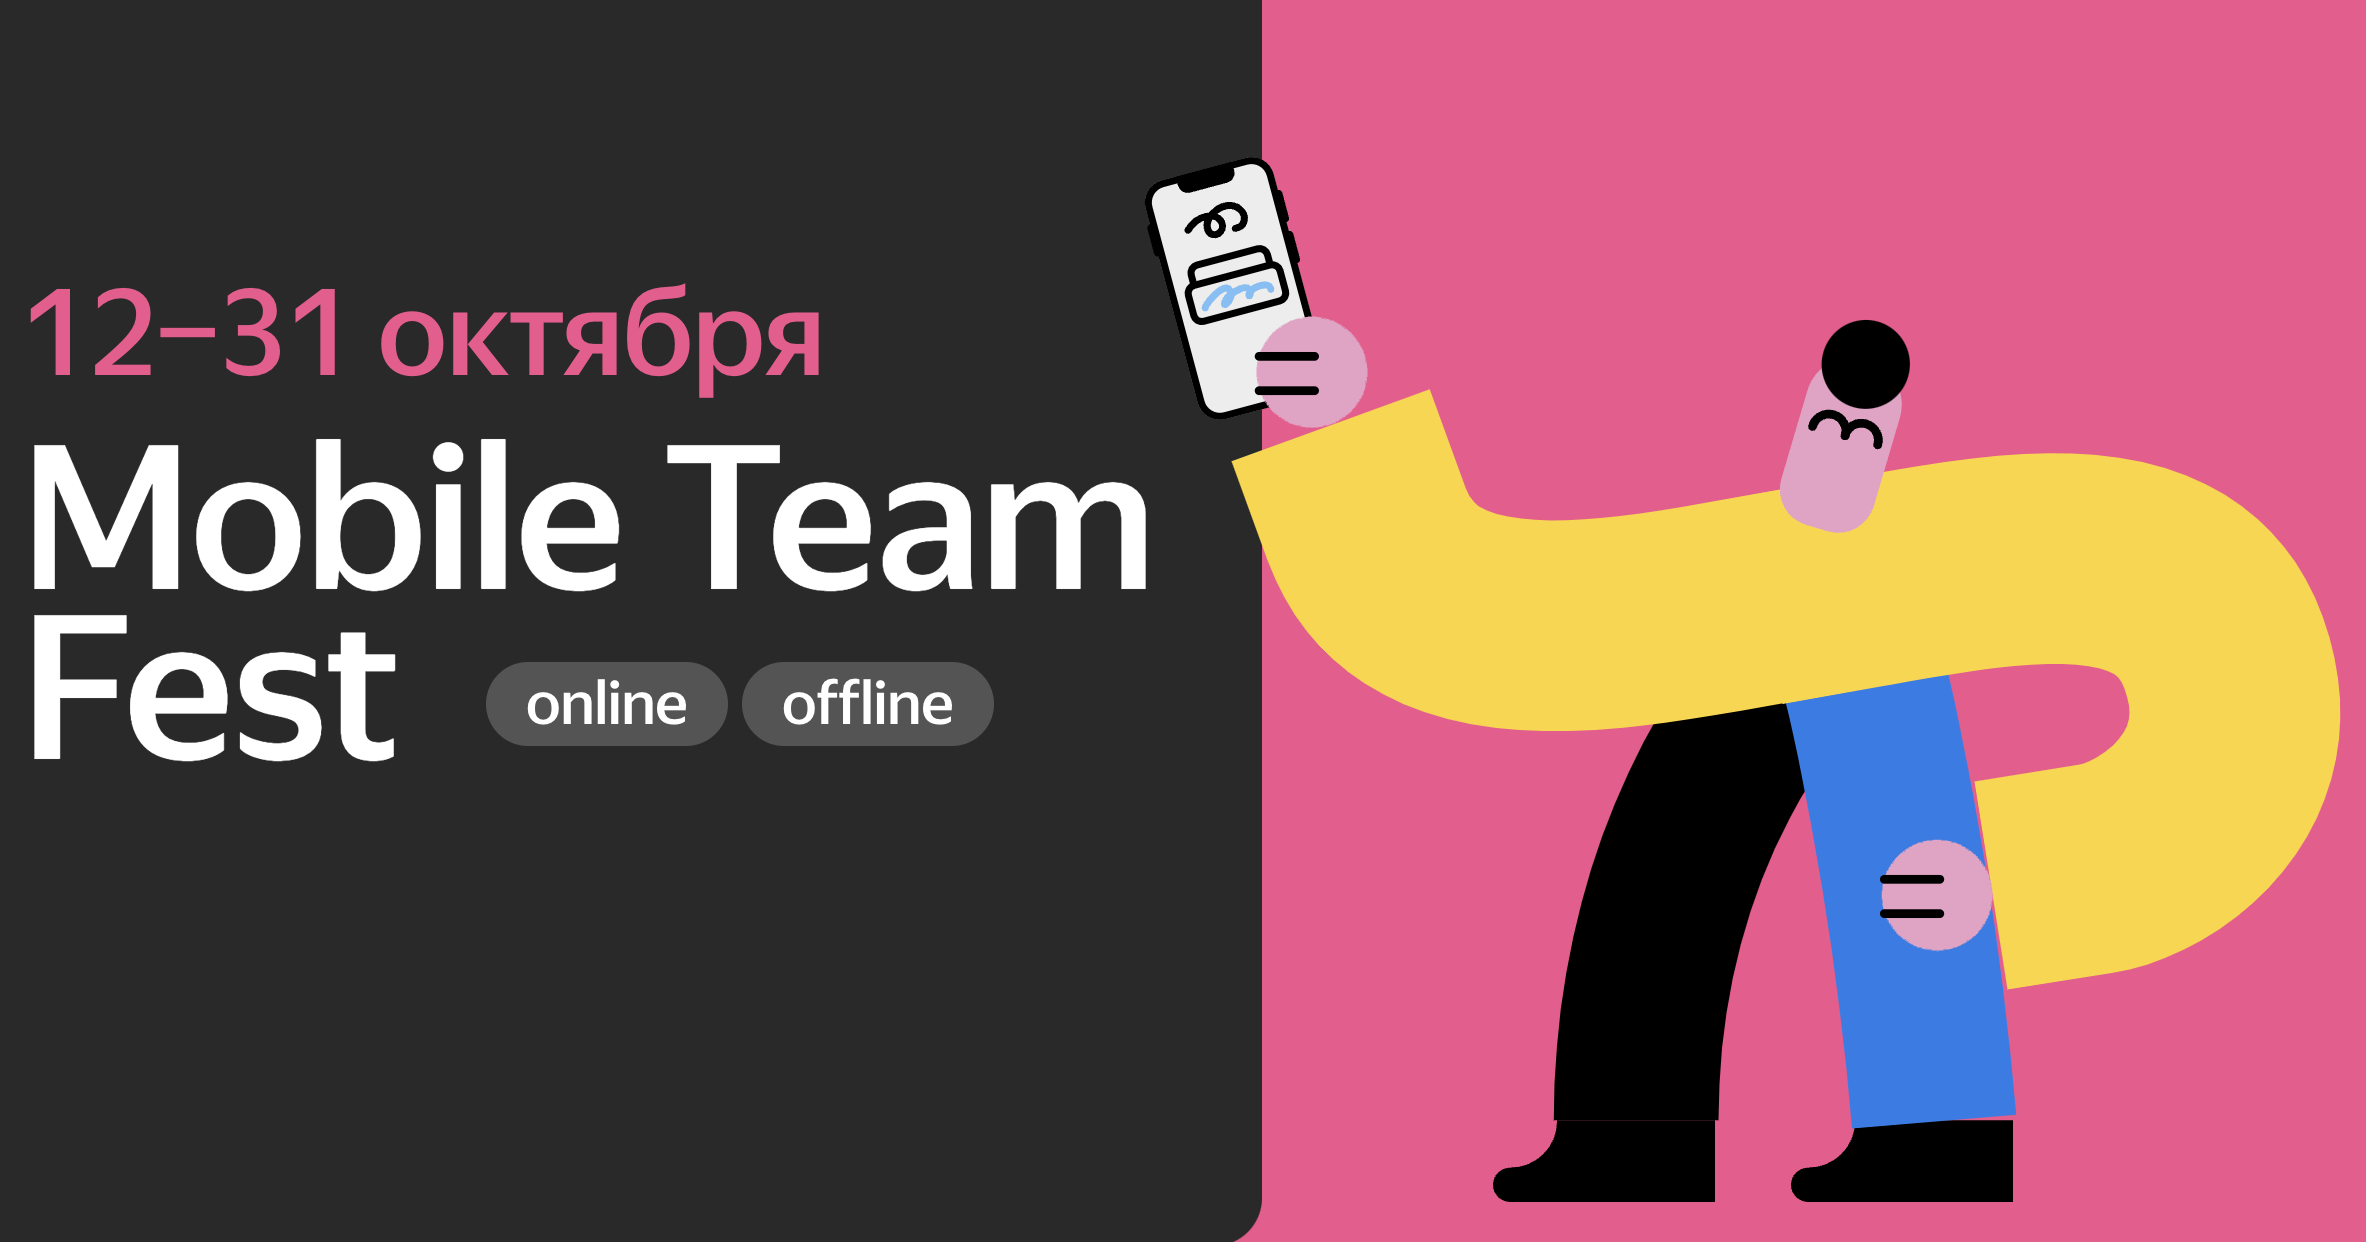 Обложка мероприятия Mobile Team Fest от Яндекса — Онлайн-знакомство с командами